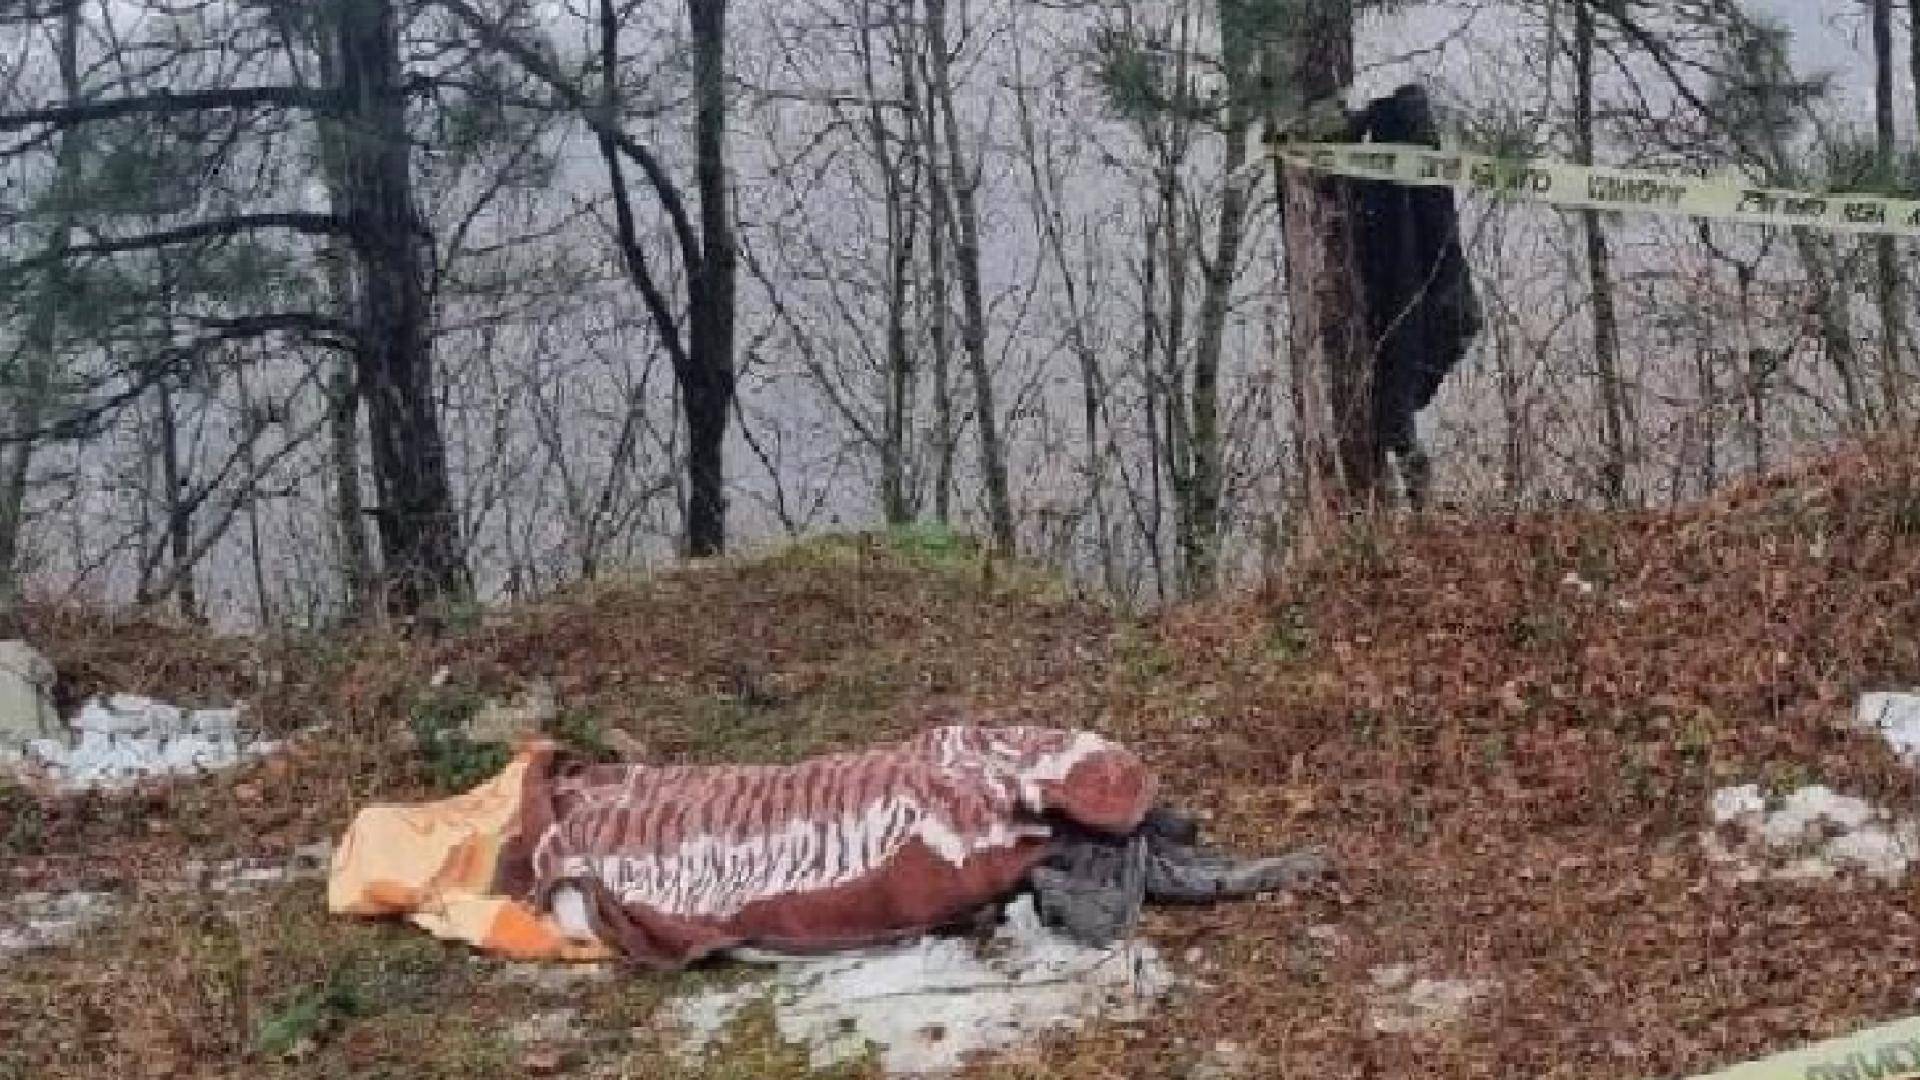 Bursa'da kestiği ağacın altında kalan işçi hayatını kaybetti!